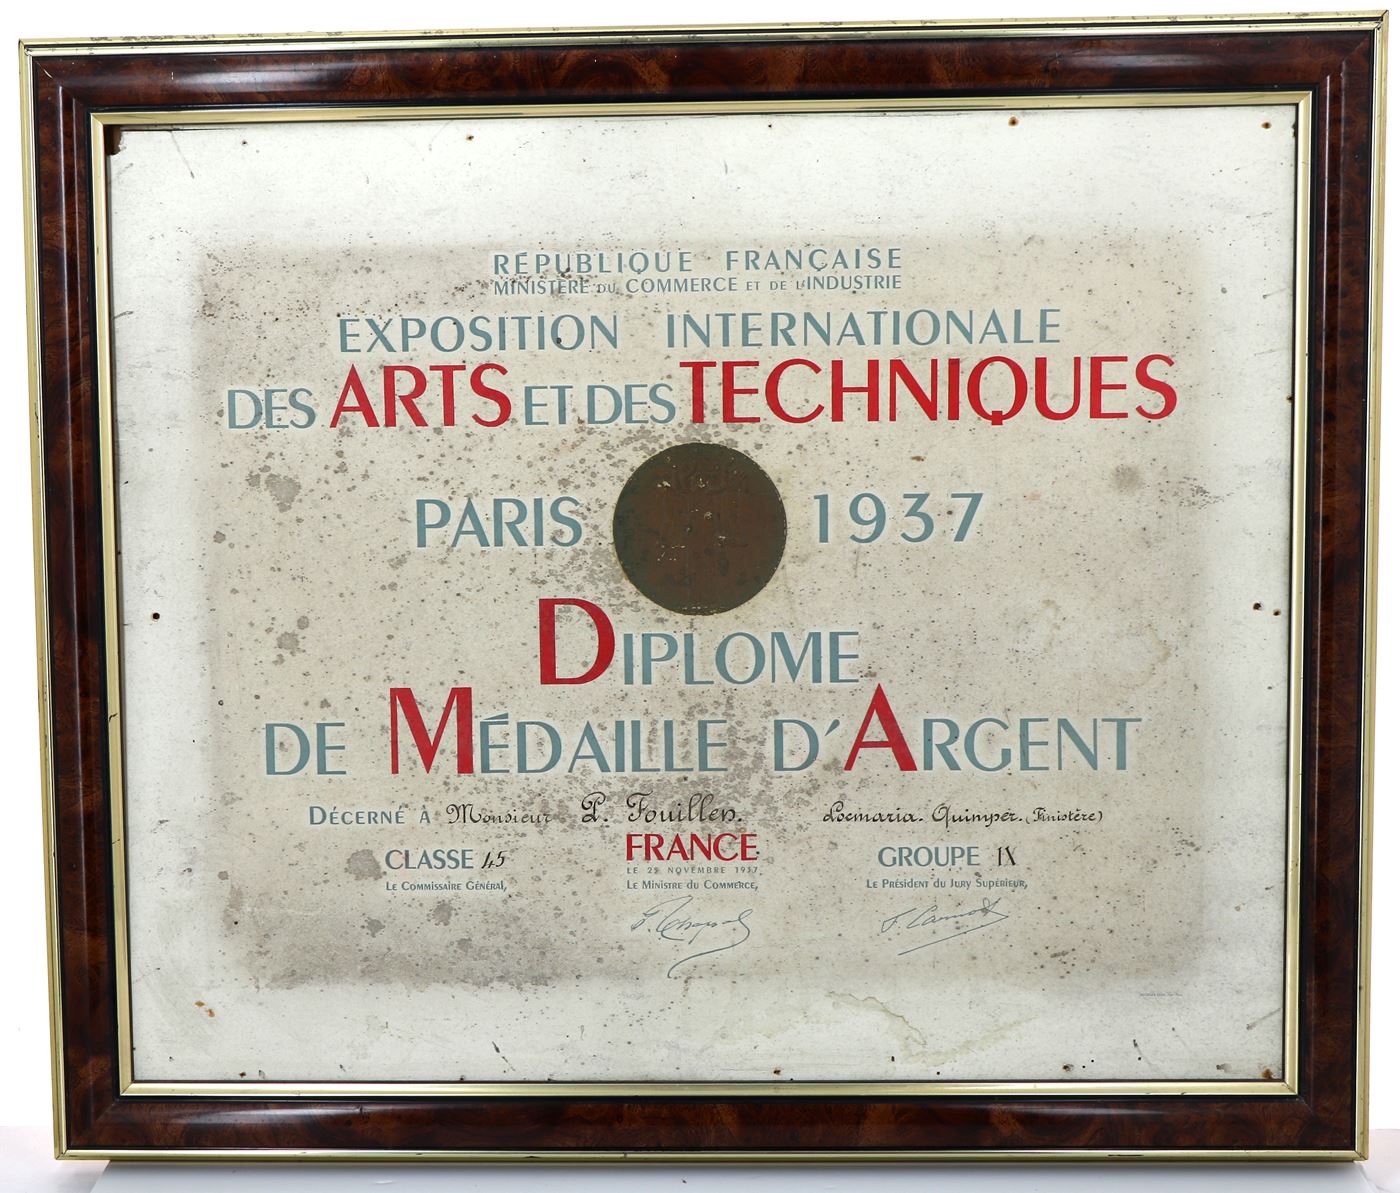 Exposition Internationale des Arts et des Techniques, Paris 1937